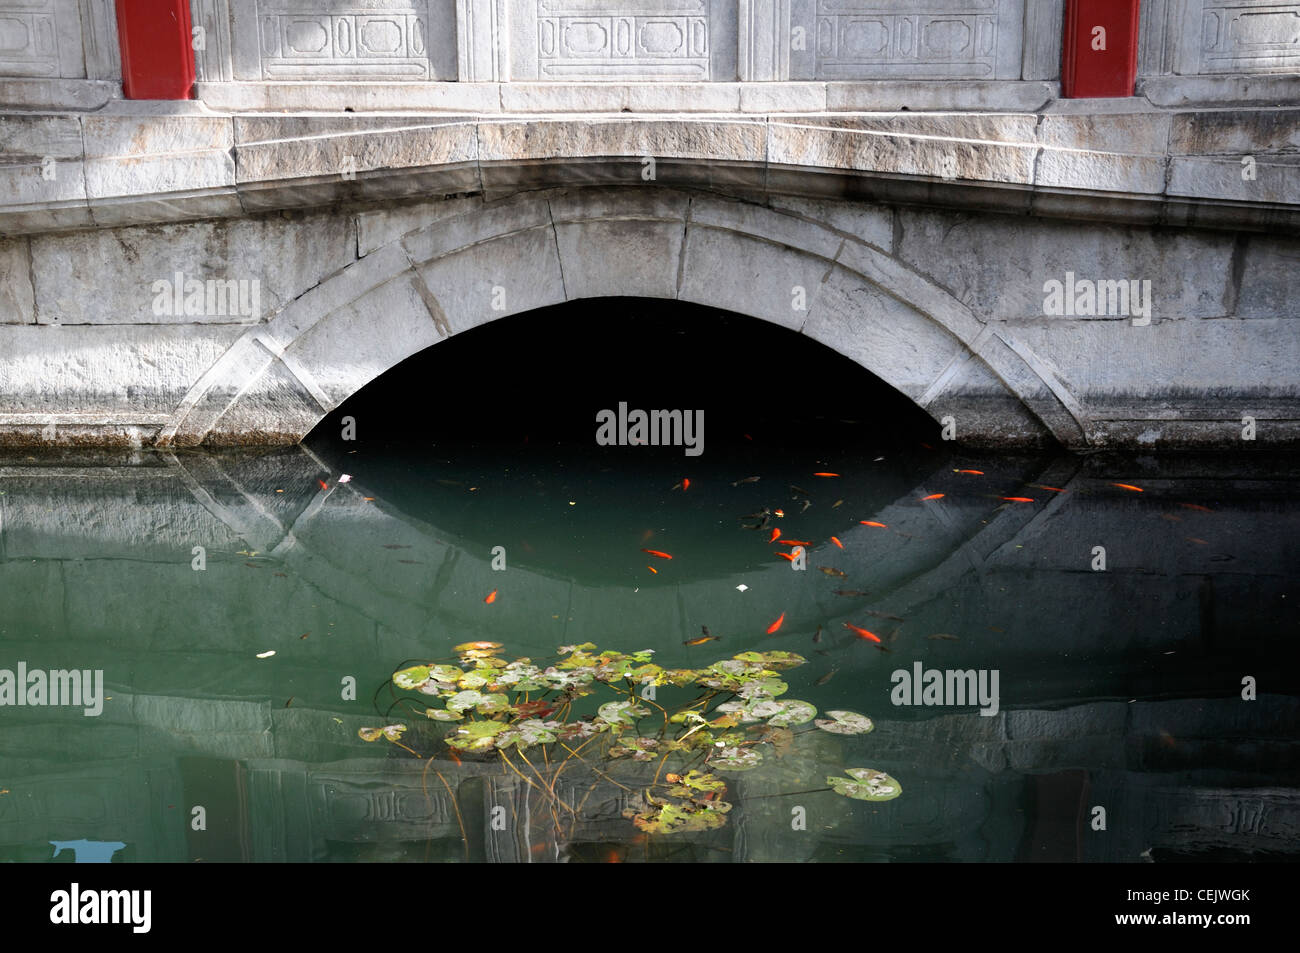 Solo span arch puente sobre el estanque de lirios jardín imperial de la Ciudad Prohibida de Beijing diseño característico de agua Foto de stock